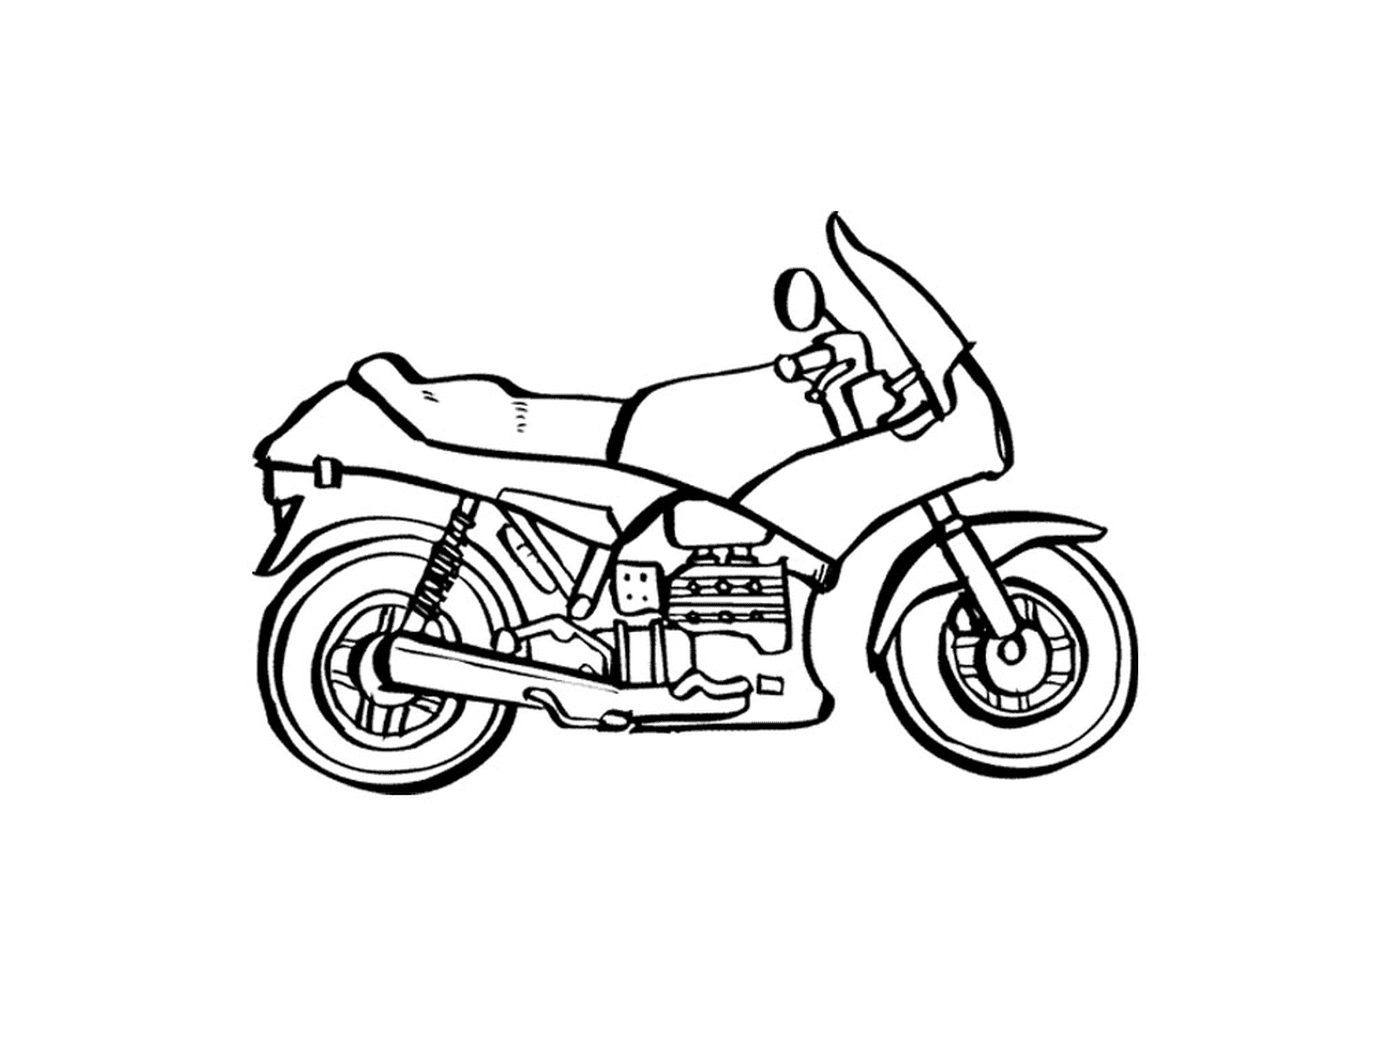   Motocyclette numéro 35 